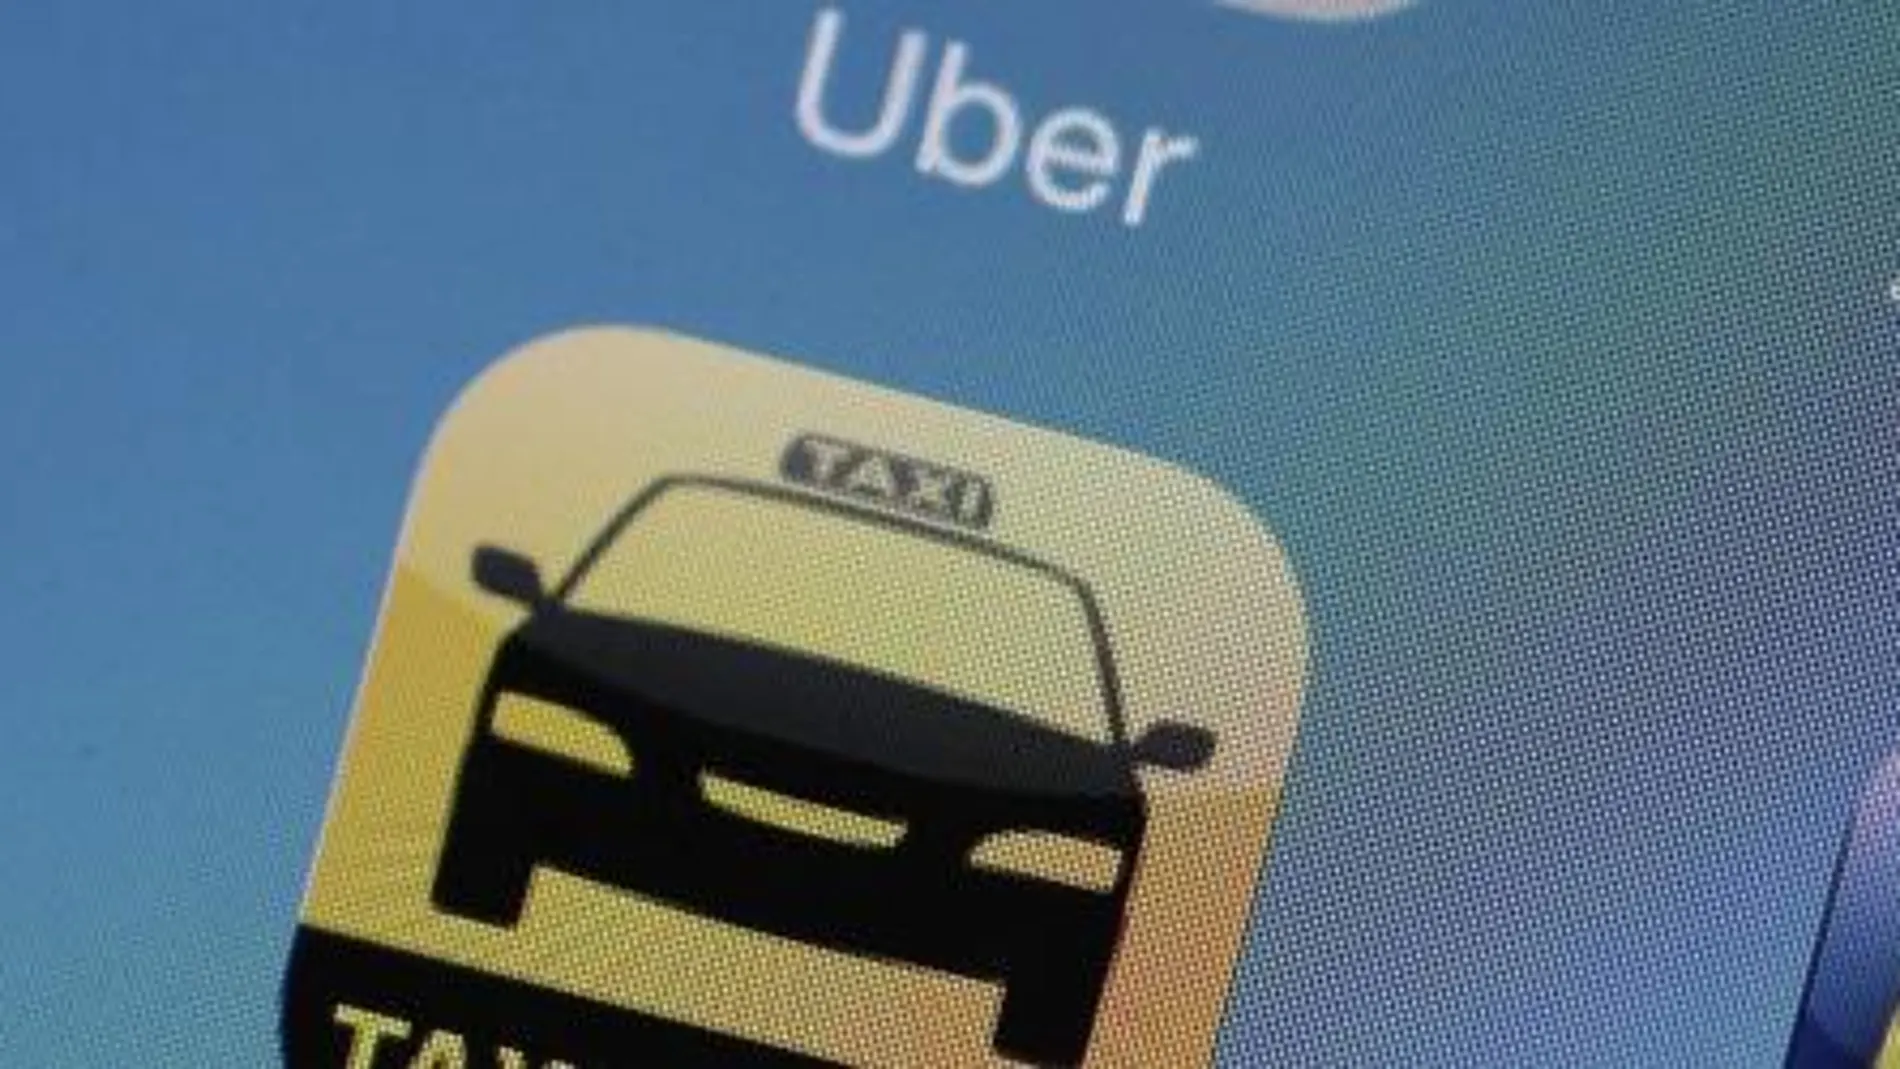 Detalle de la aplicación "Uber"y "Taxi Berlin"en la pantalla de un smartphone en Berlín (Alemania).